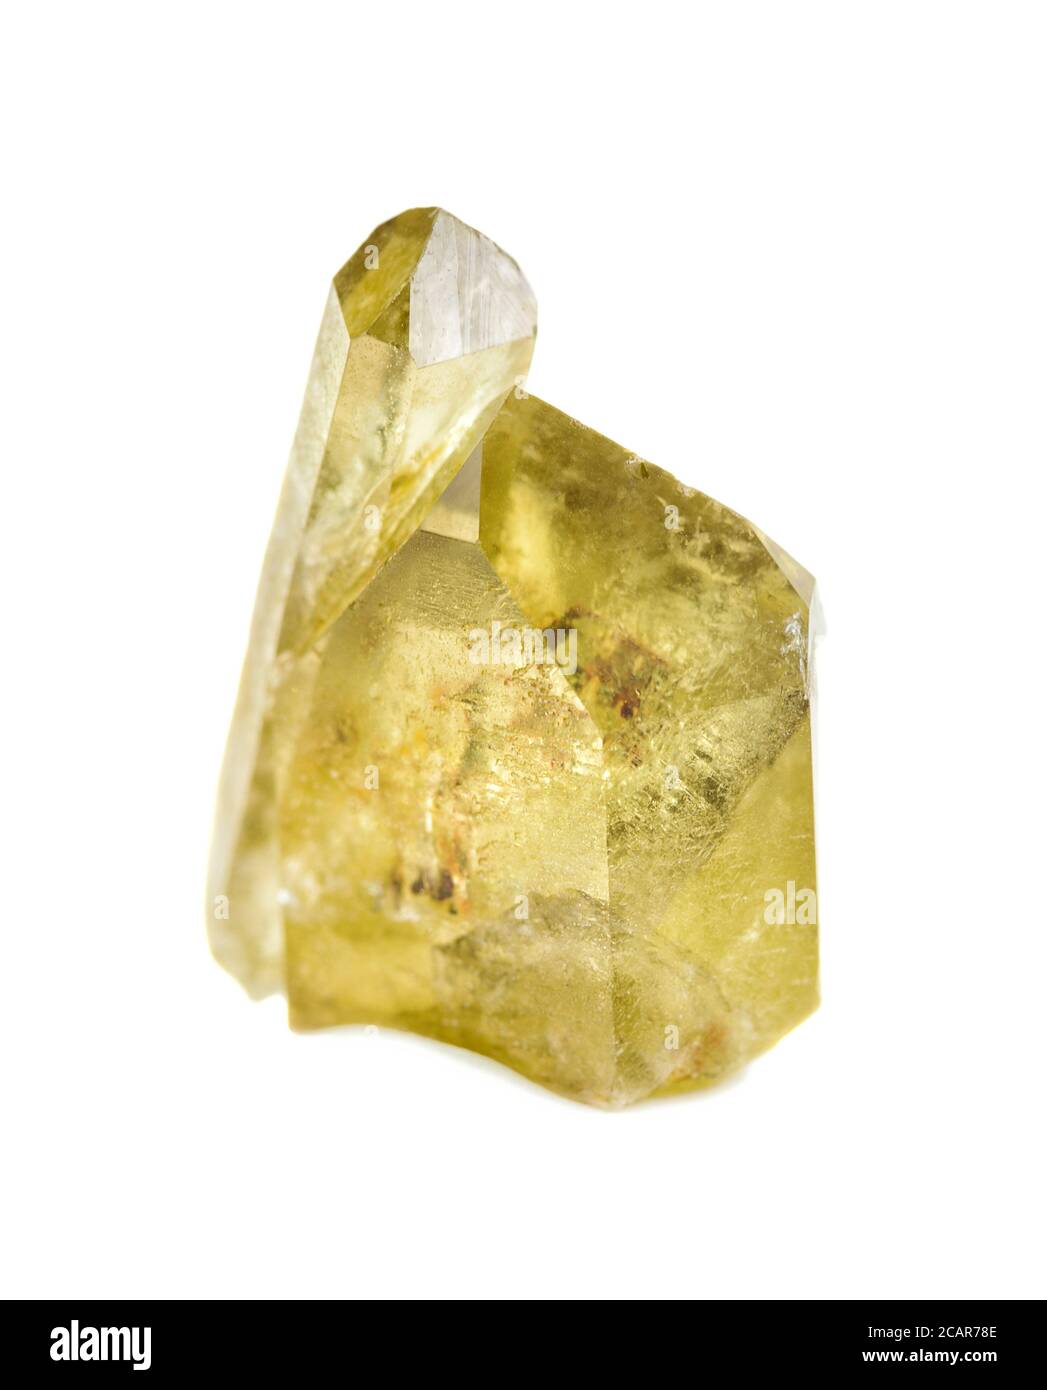 Deux cristaux de citrine jaune translucide isolés sur un fond blanc Banque D'Images